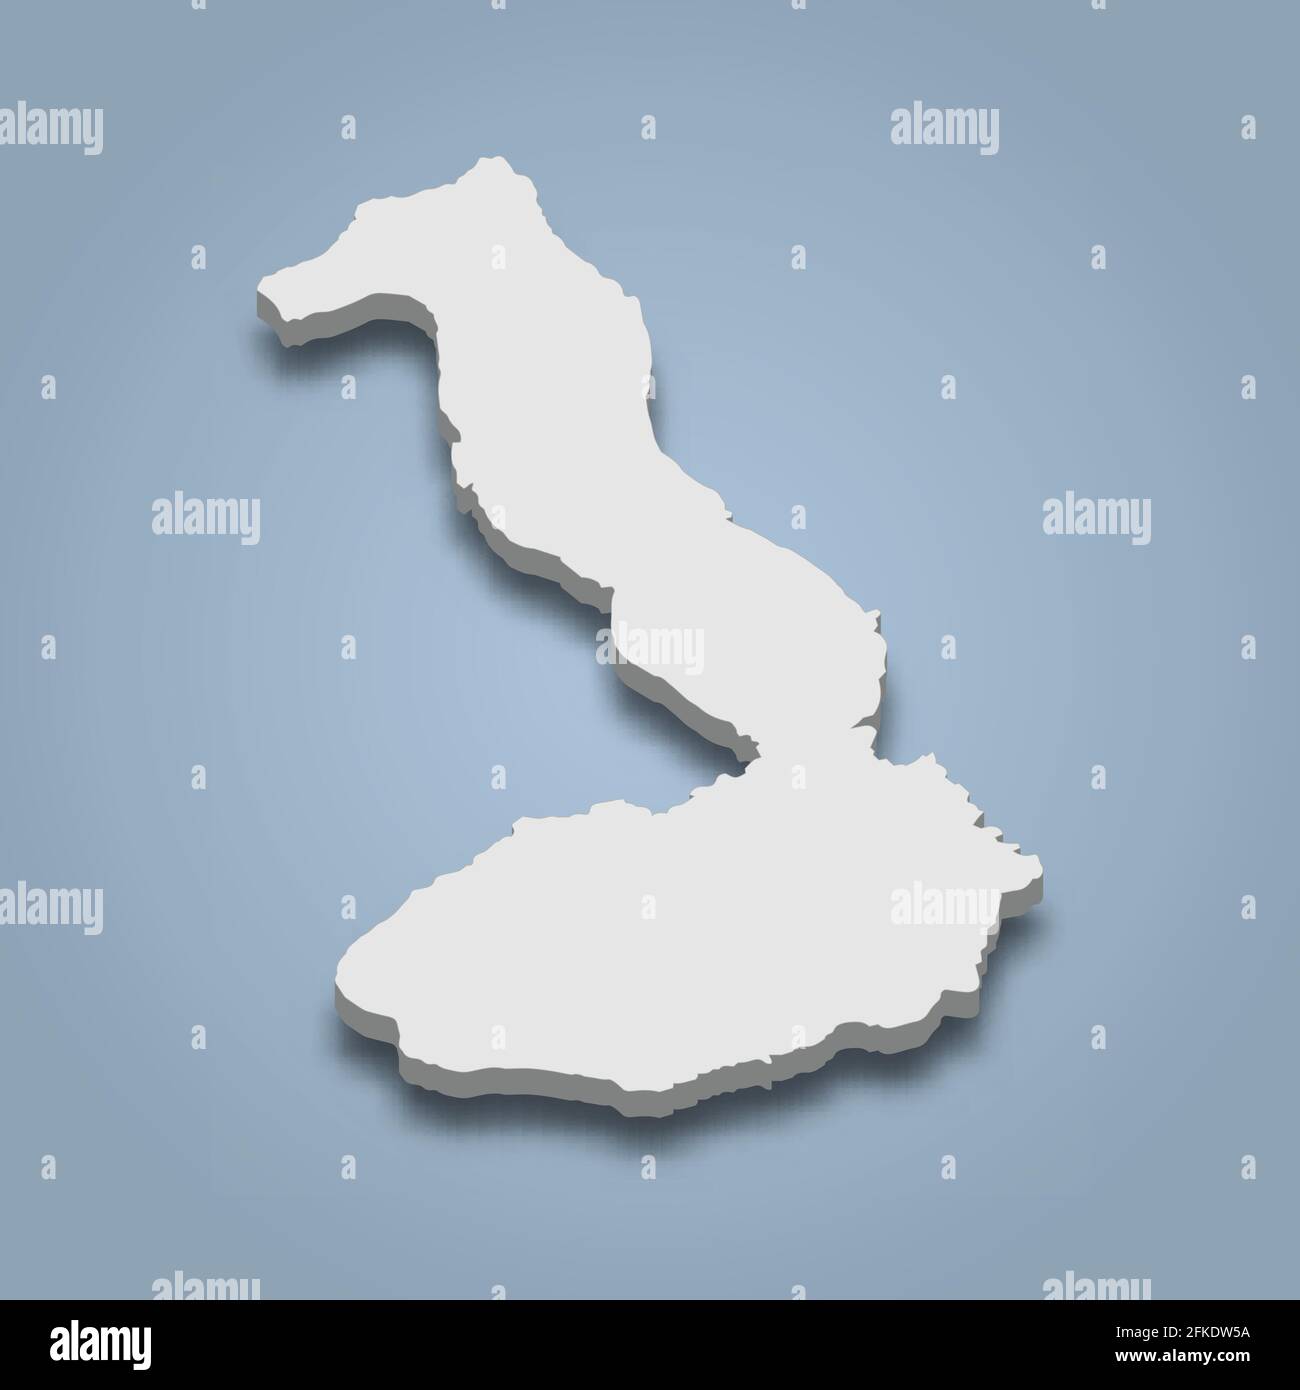 La mappa isometrica 3d di Isabela è un'isola delle isole Galapagos, un'illustrazione vettoriale isolata Illustrazione Vettoriale